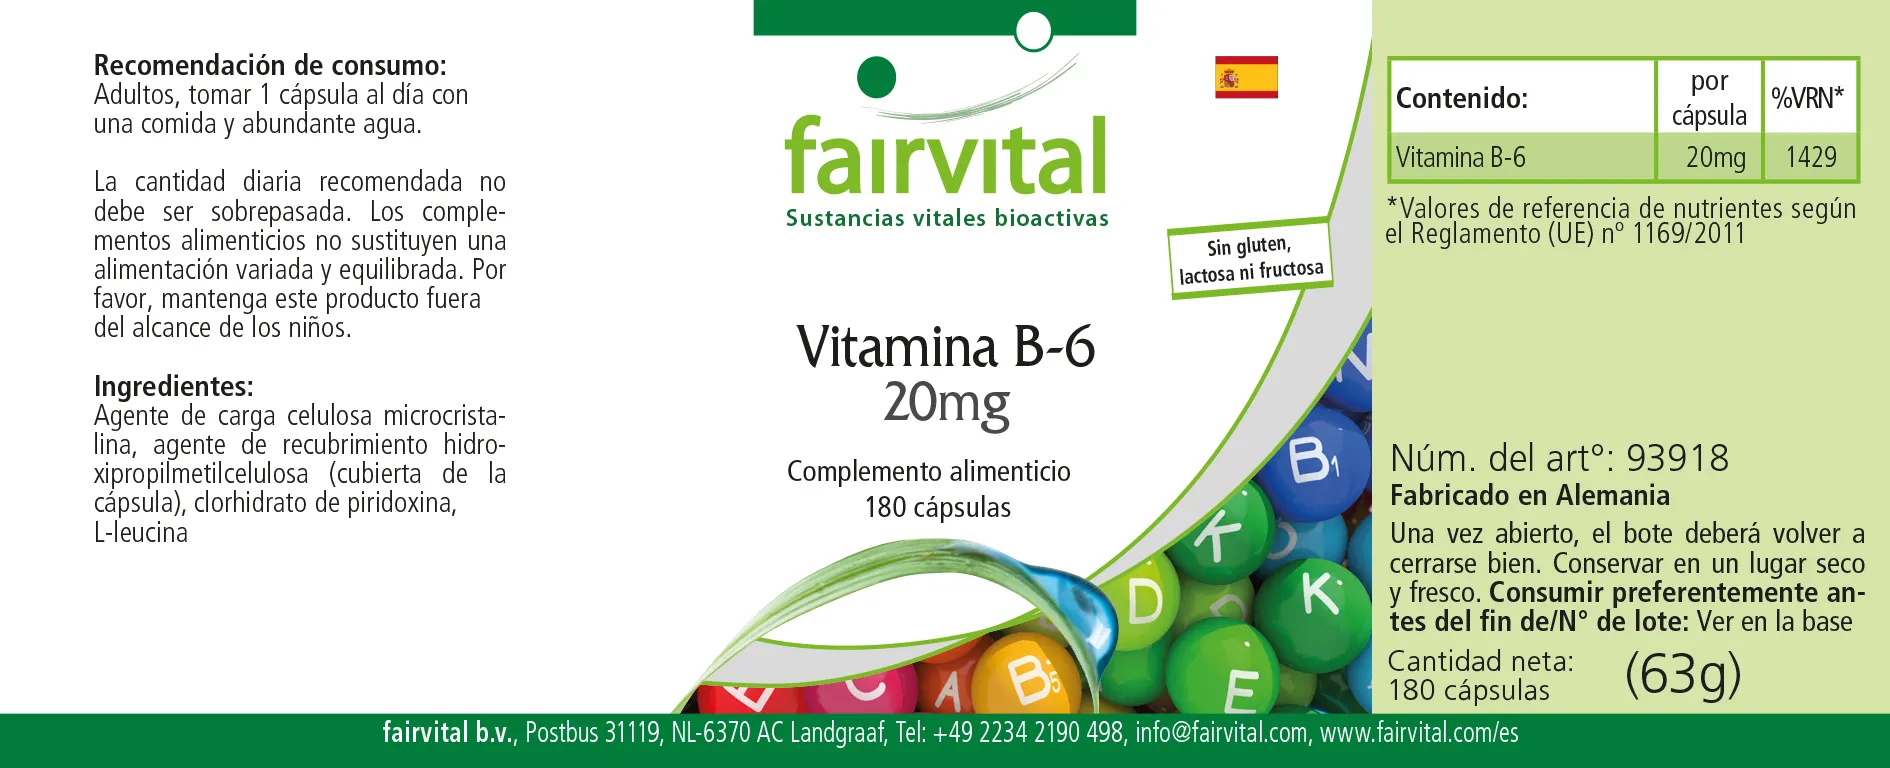 Vitamin B-6 20mg